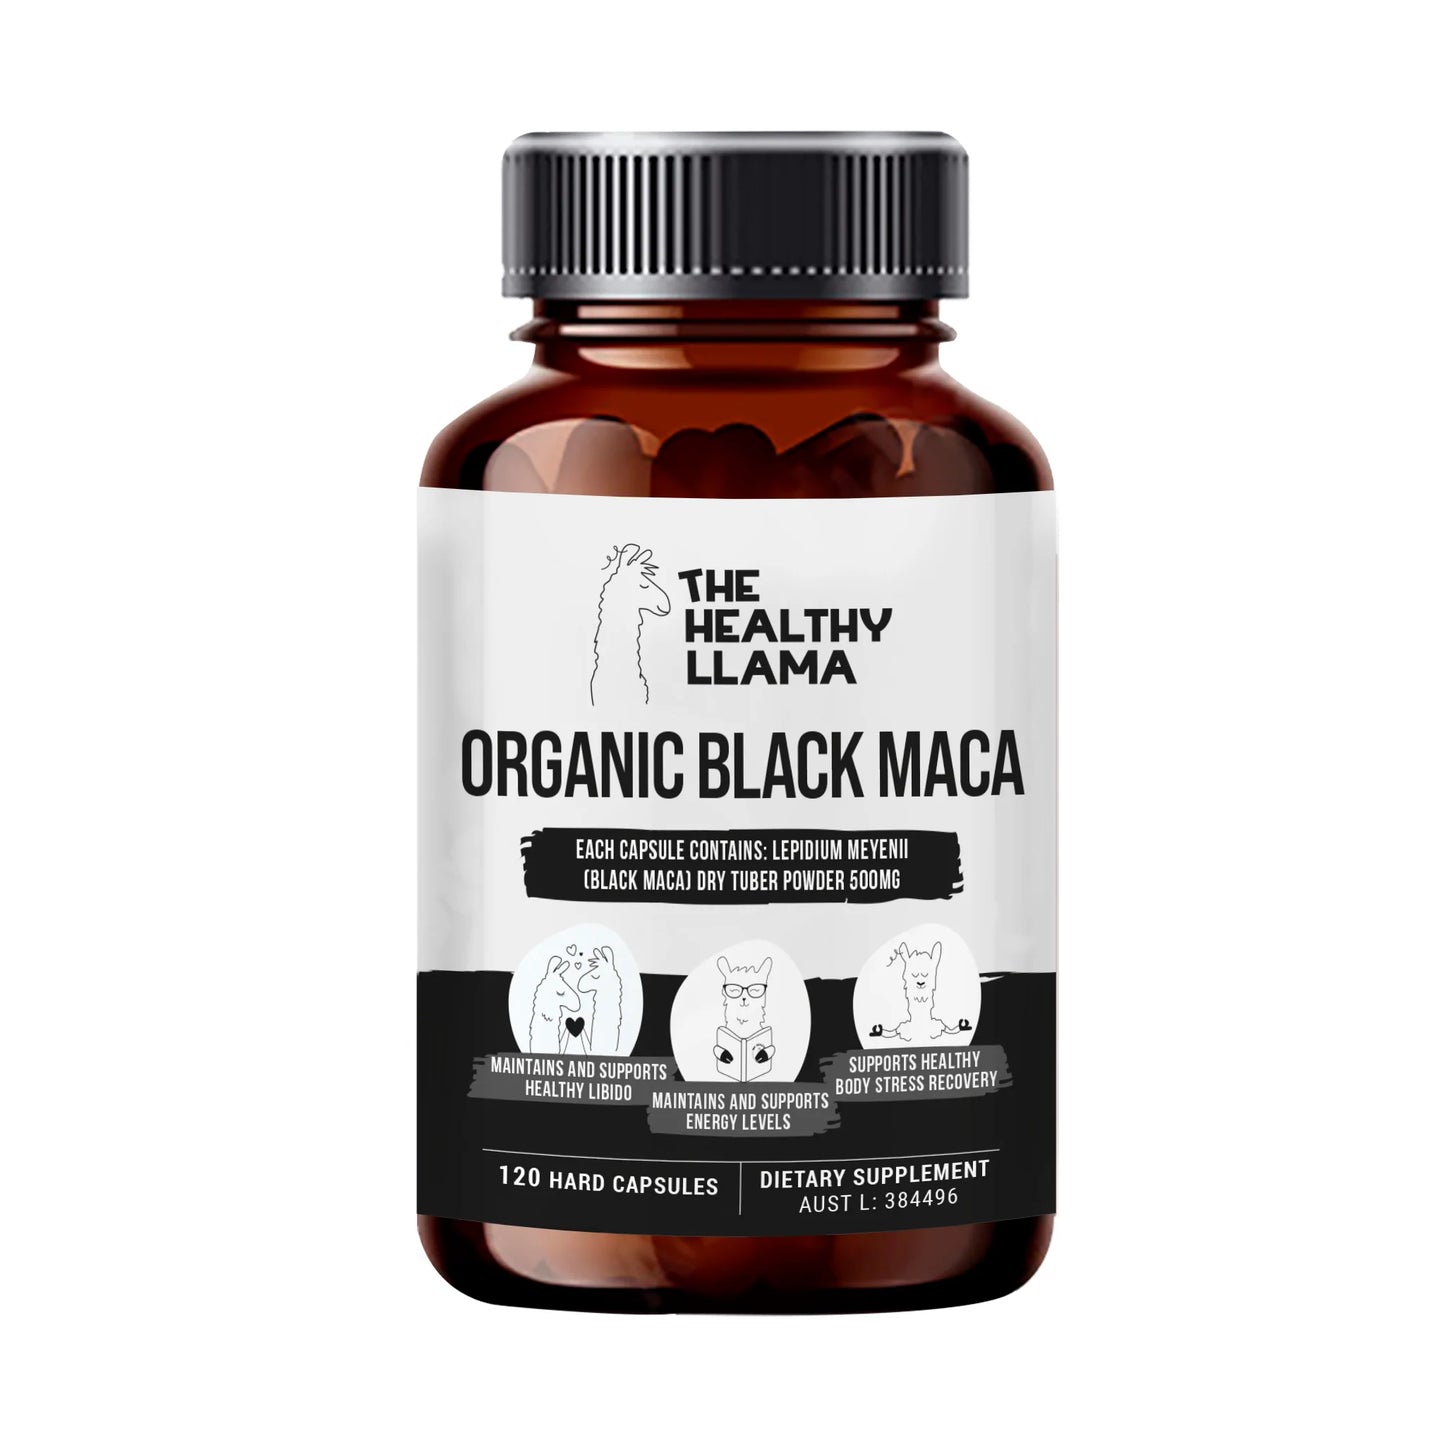 The Healthy Llama Black Maca 120 Vegetarian Capsules, Our Ancient Natural Invigorator